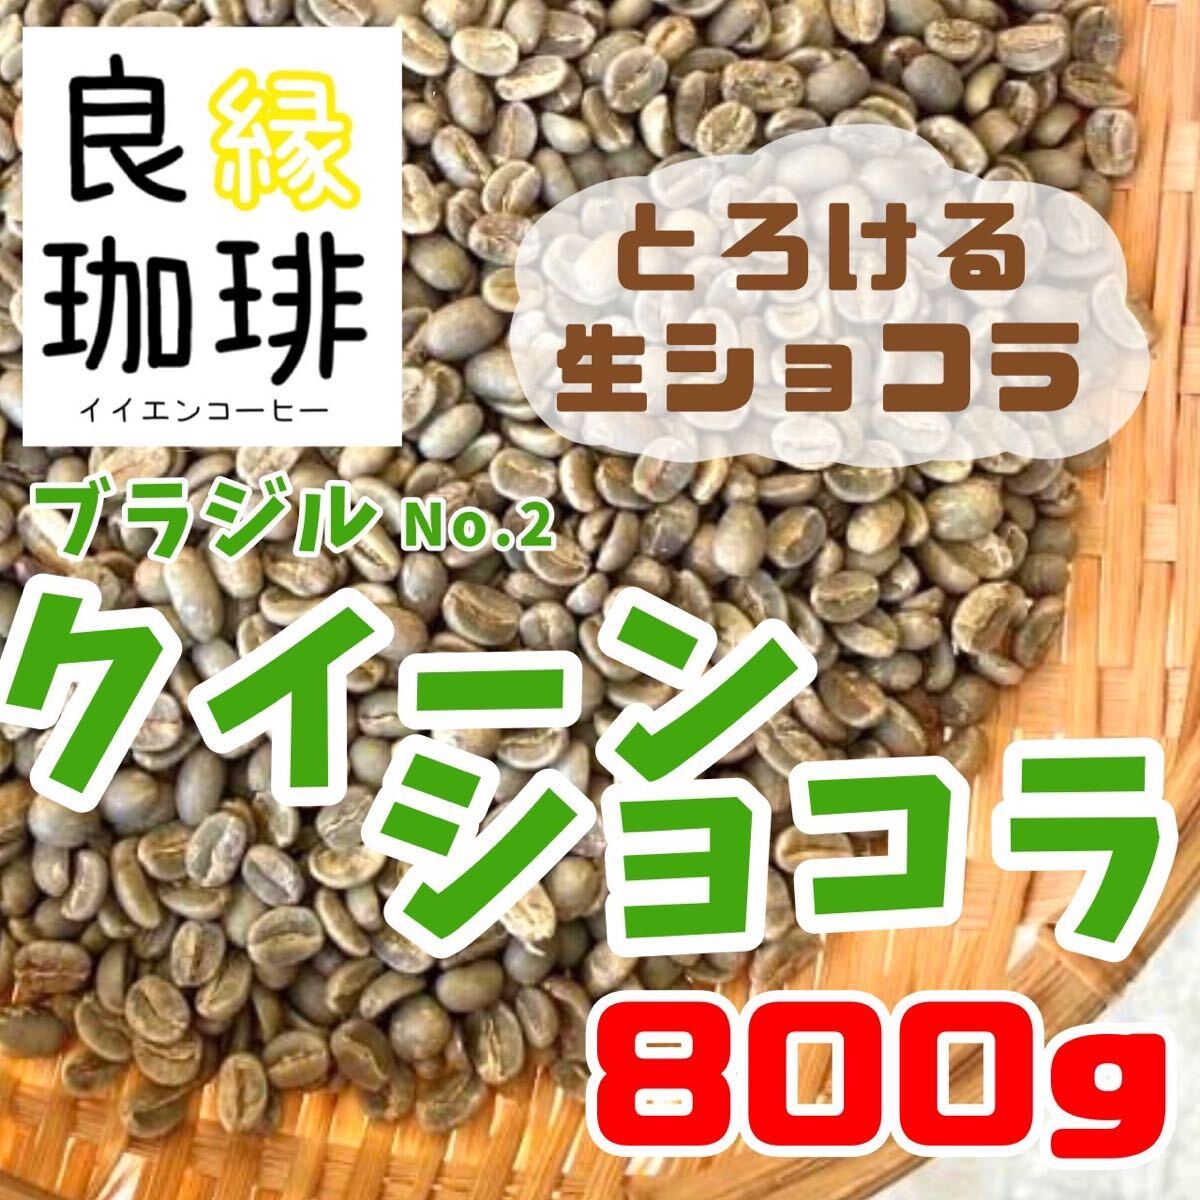 生豆 ブラジル クィーンショコラ Qグレード 800g コーヒー豆 珈琲豆 Brazil coffee